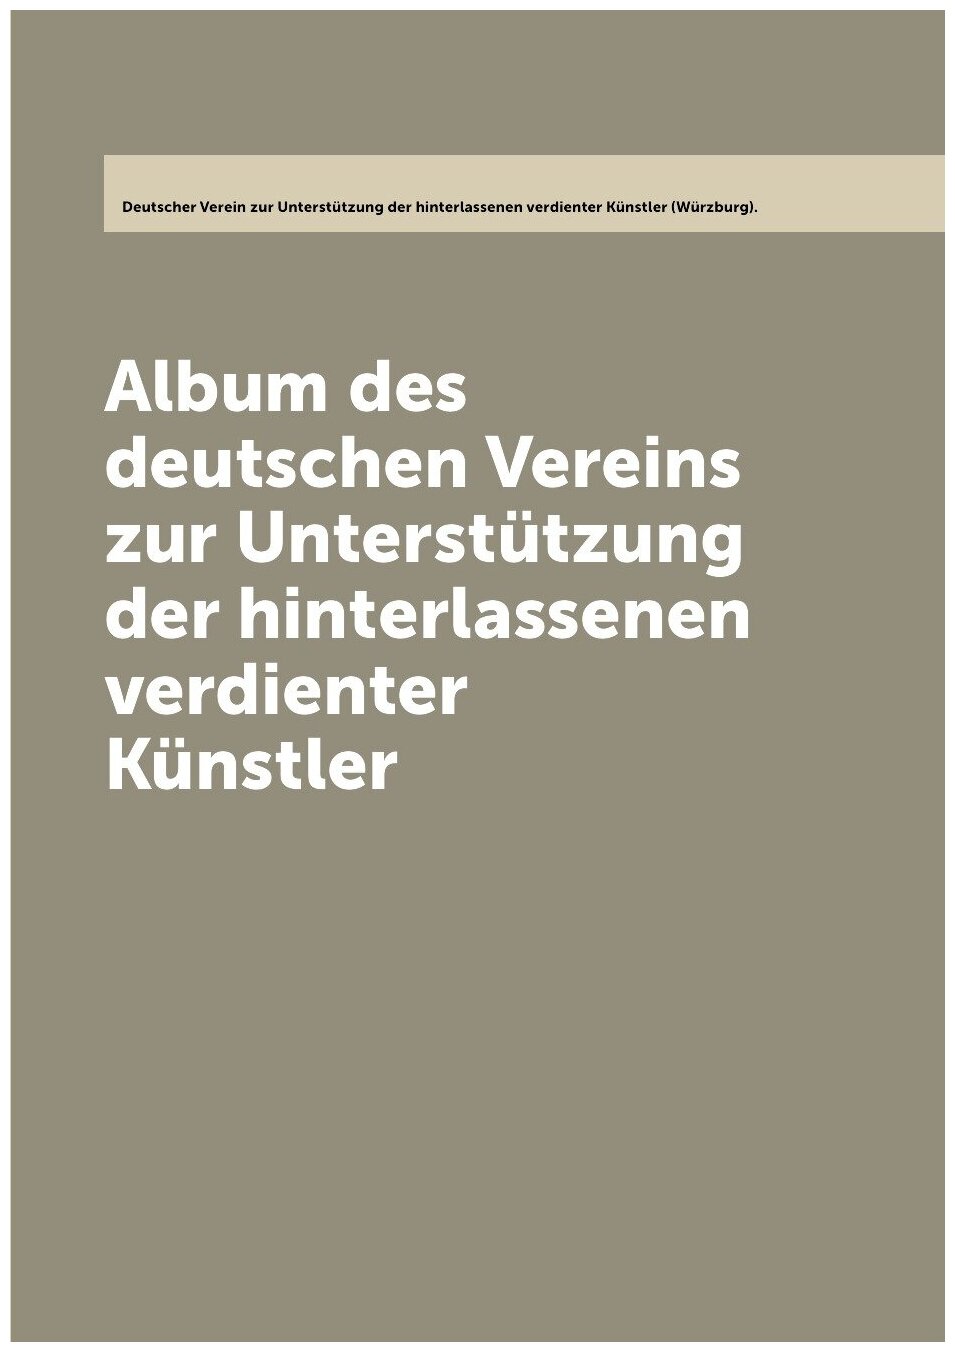 Album des deutschen Vereins zur Unterstützung der hinterlassenen verdienter Künstler